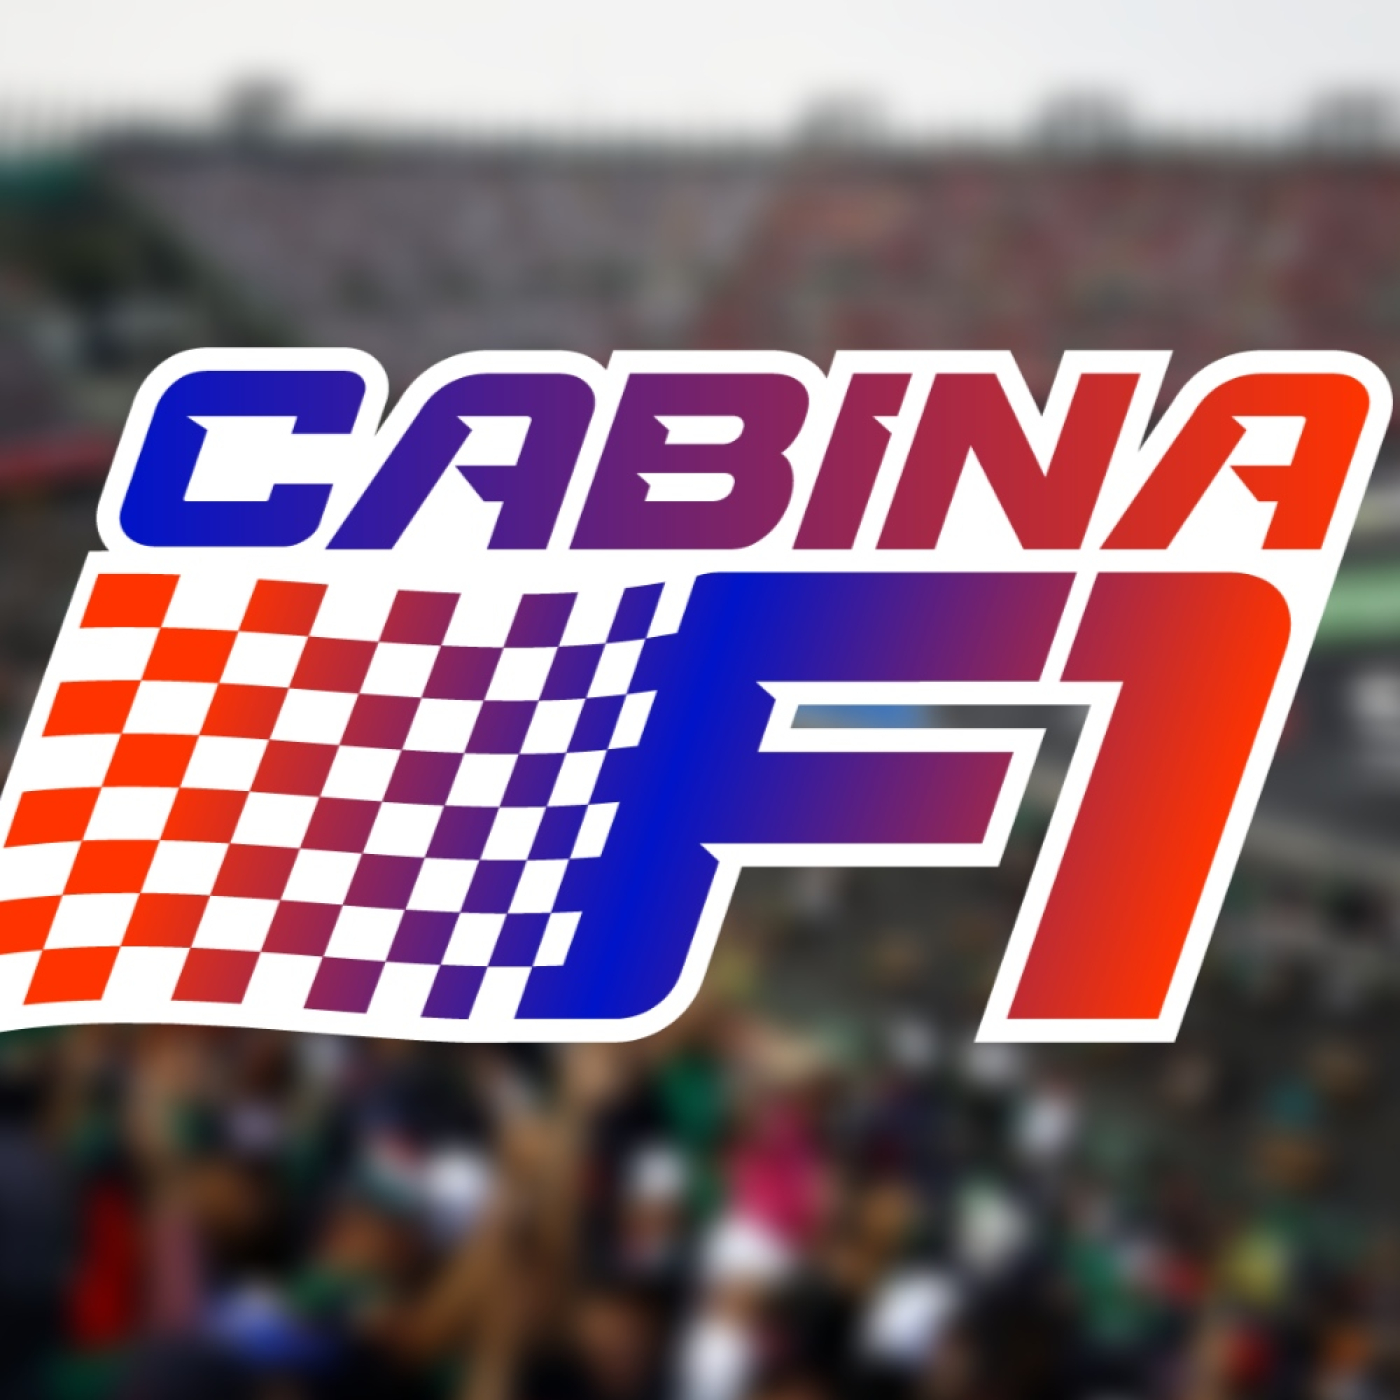 Checo hace historia - Cabina F1 - Post GP de Abu Dhabi